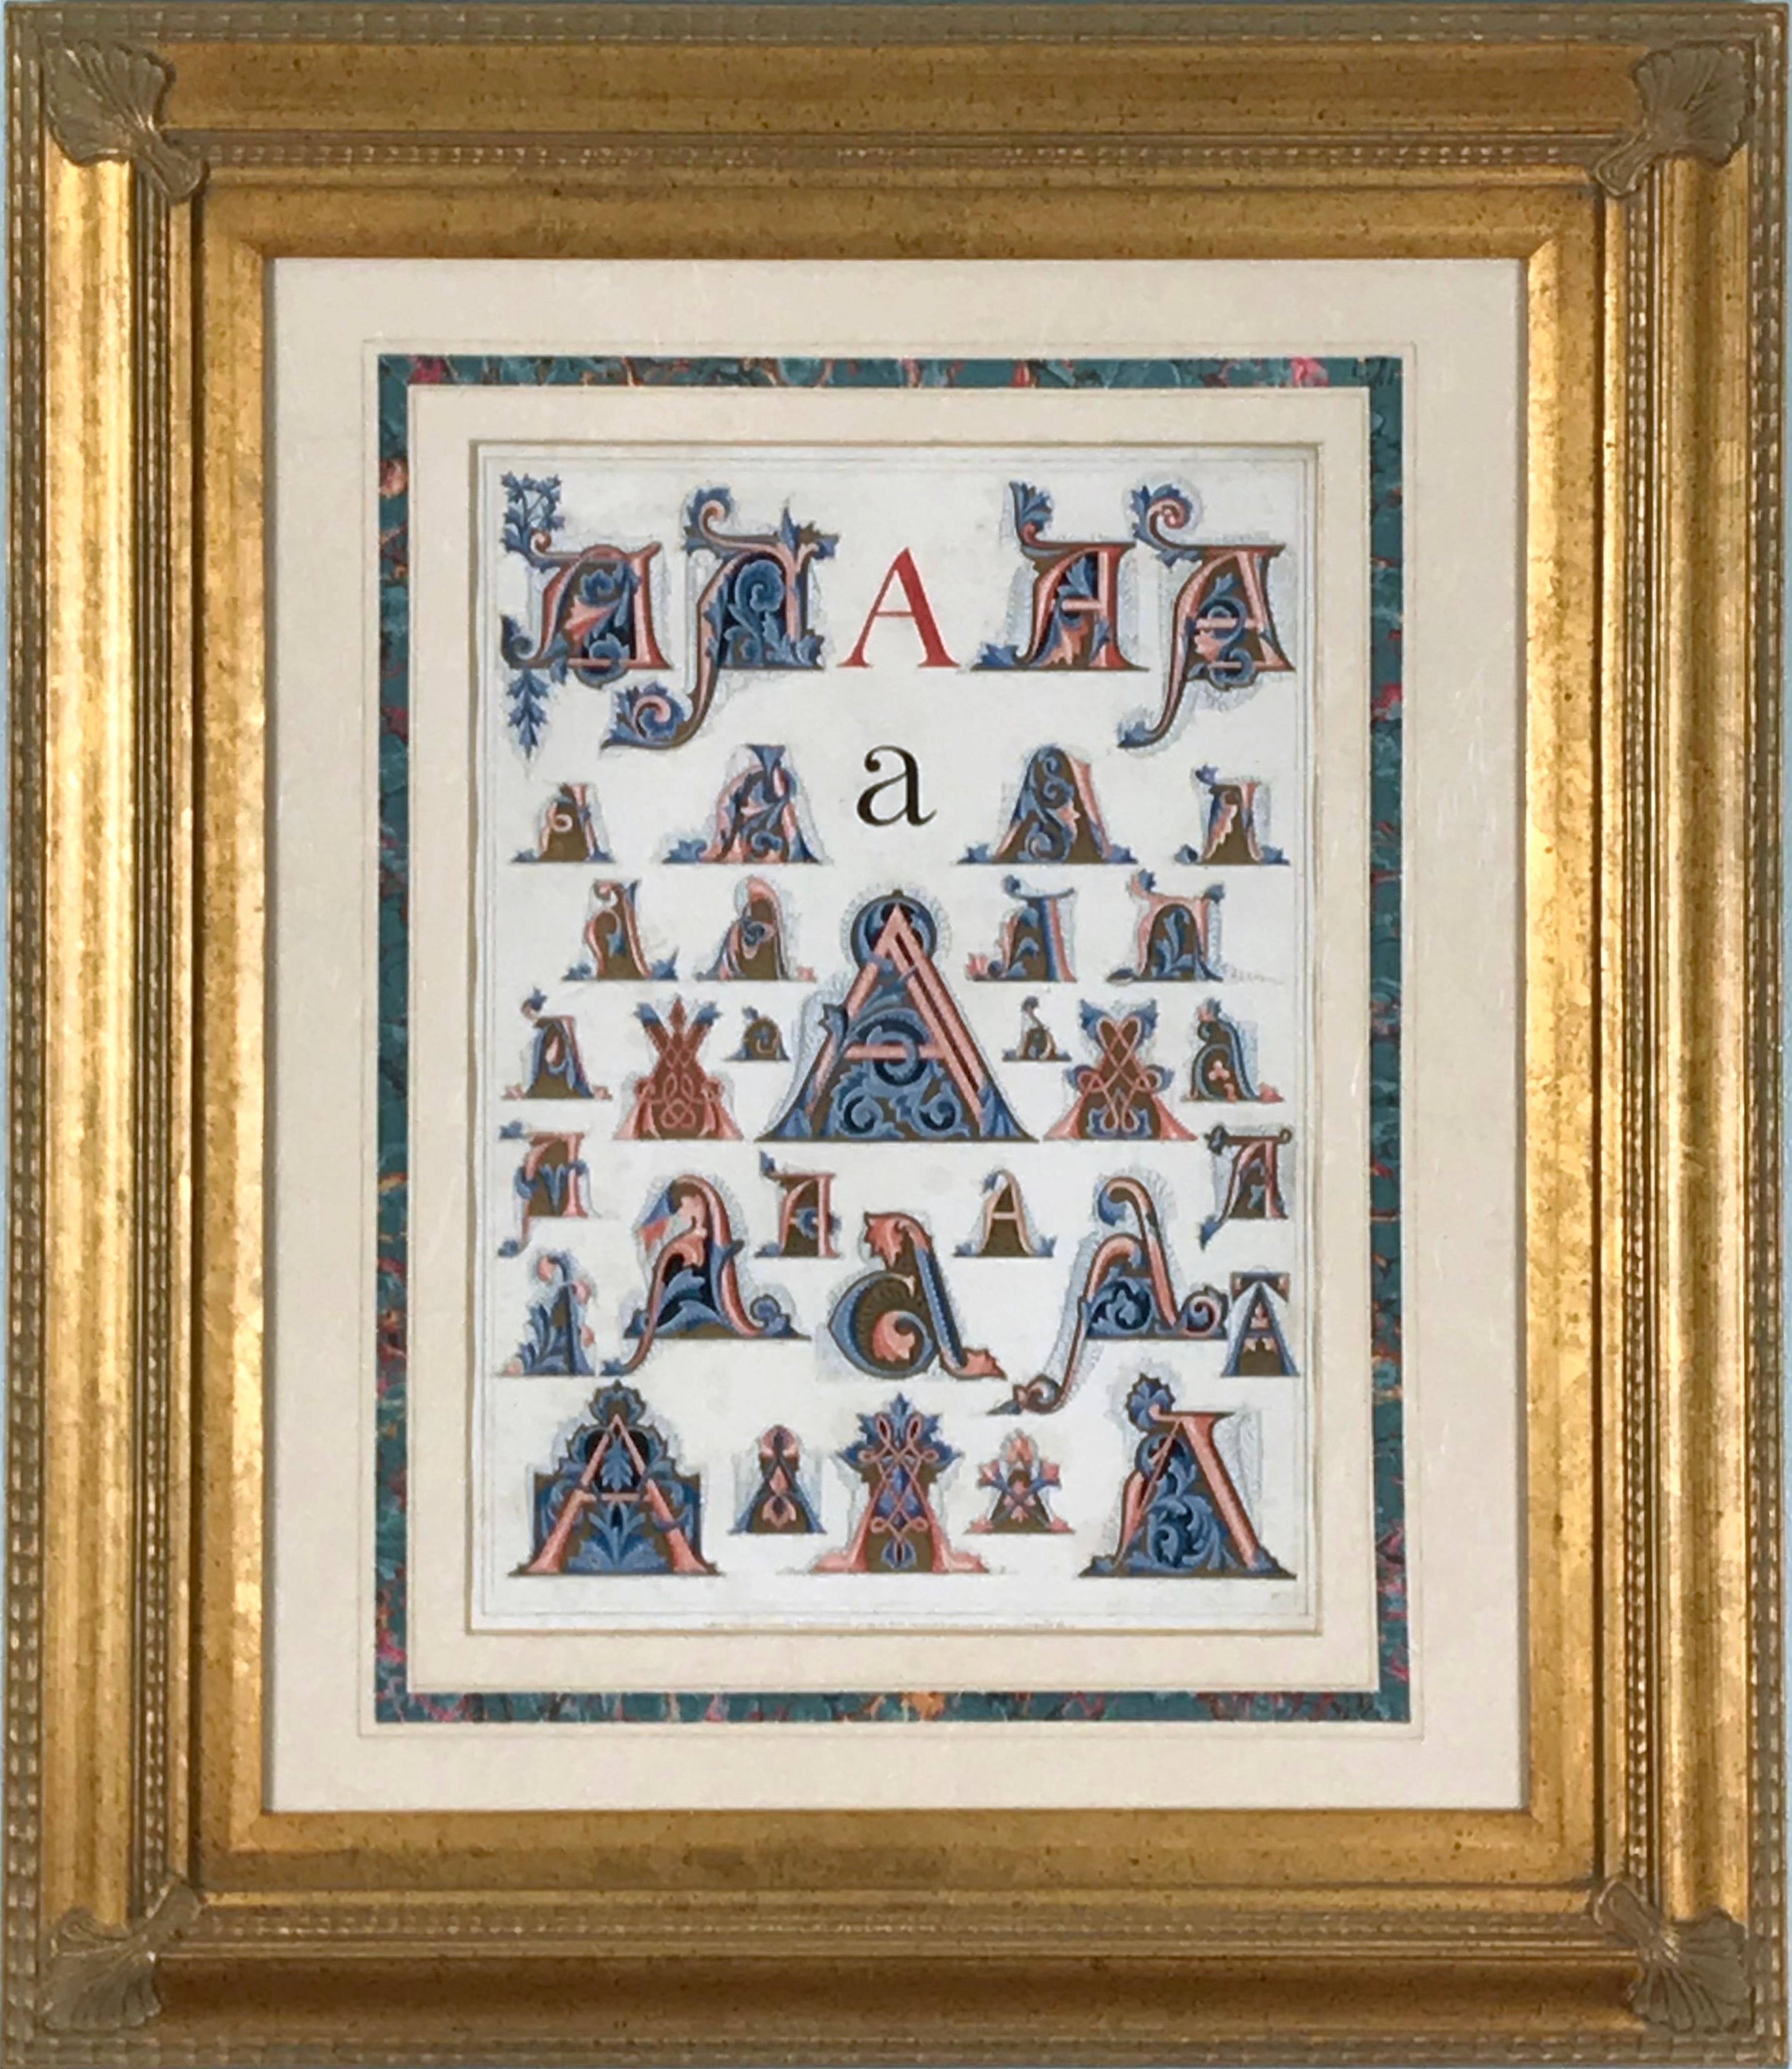 Initial Letters "A" (Alphabet) - Print by Owen Jones